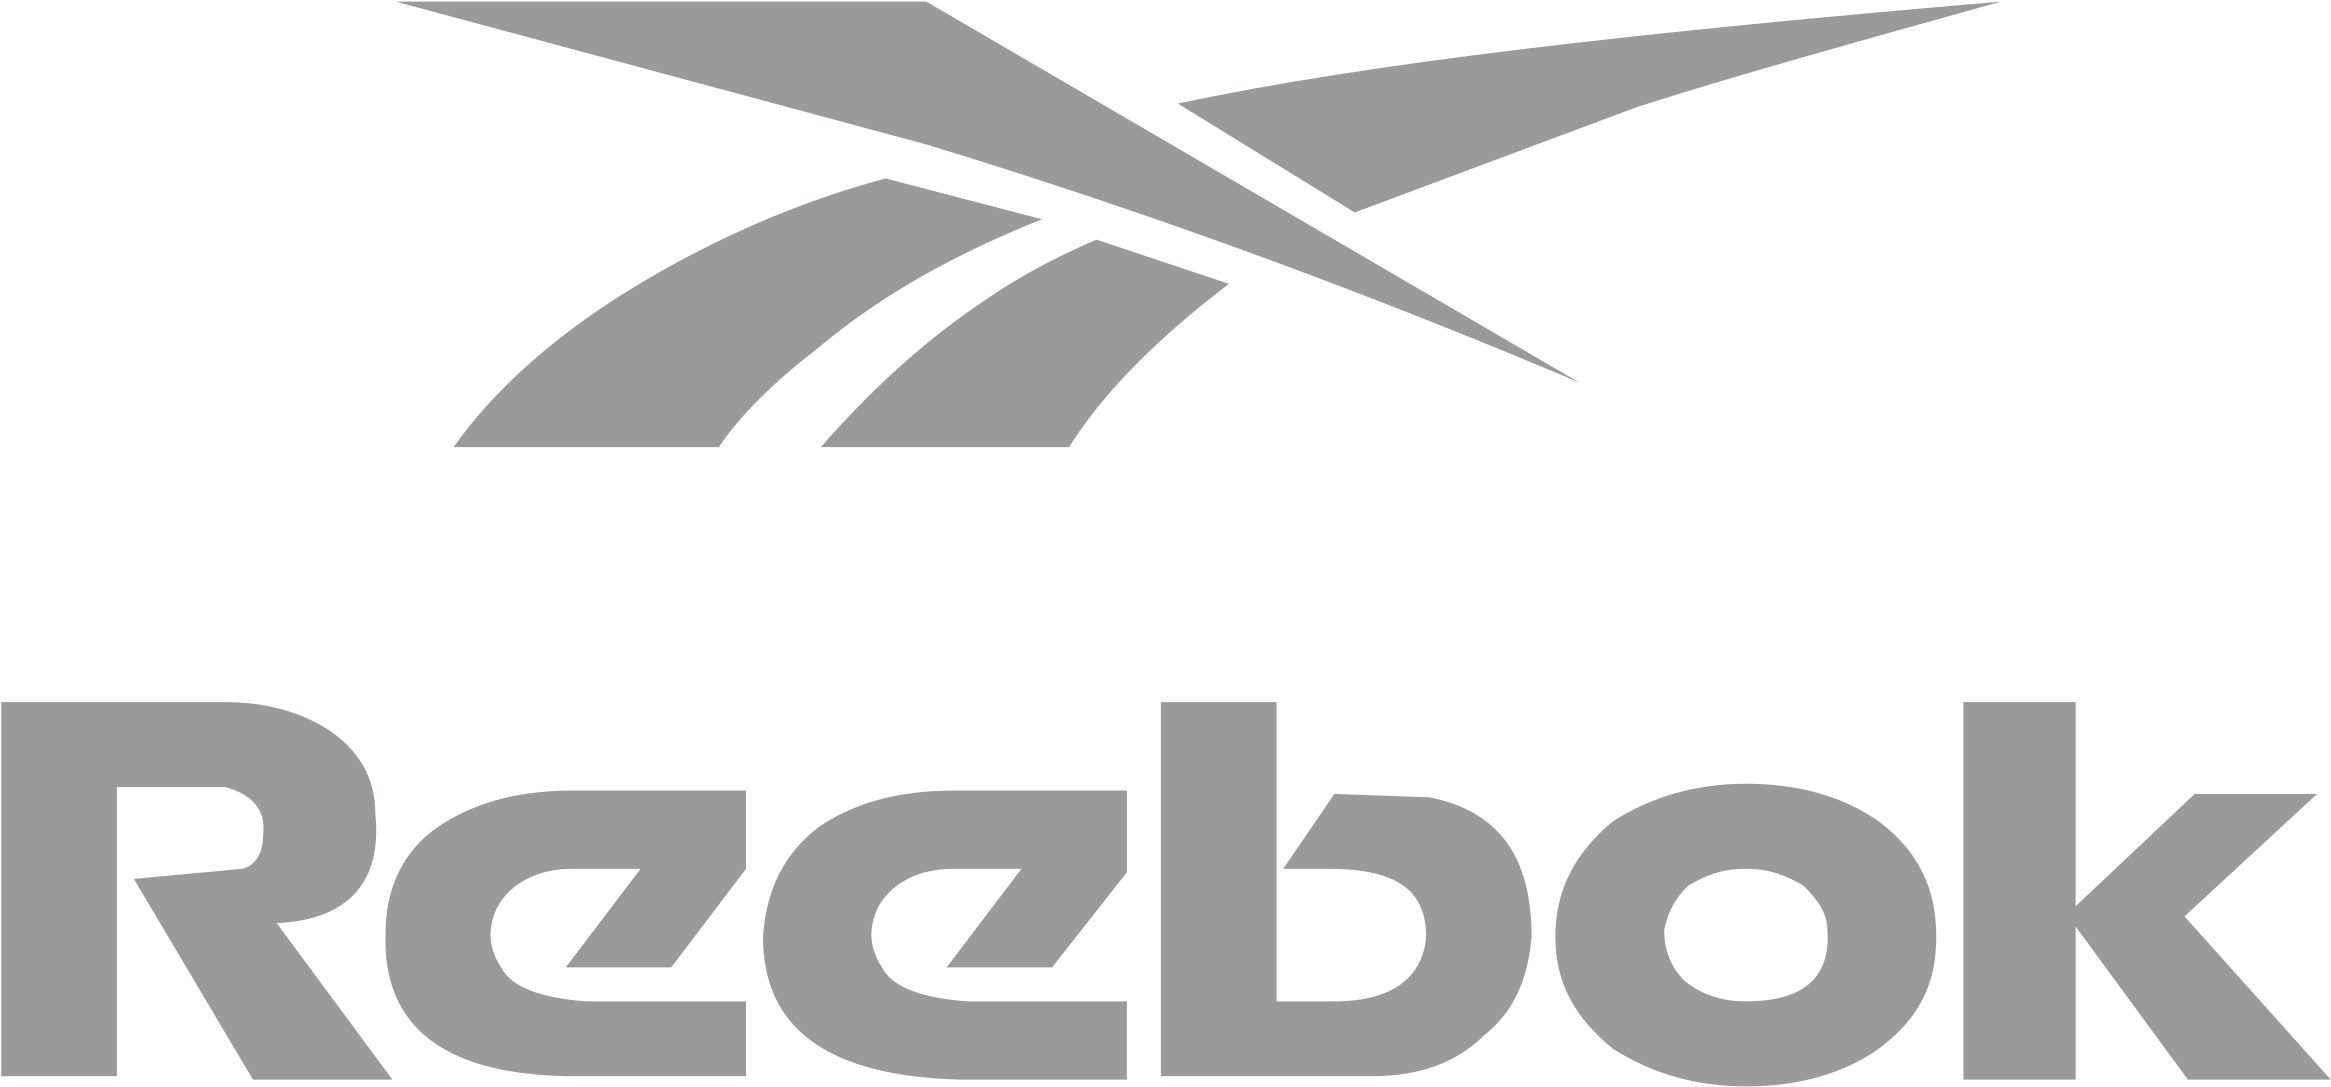 reebok logo png